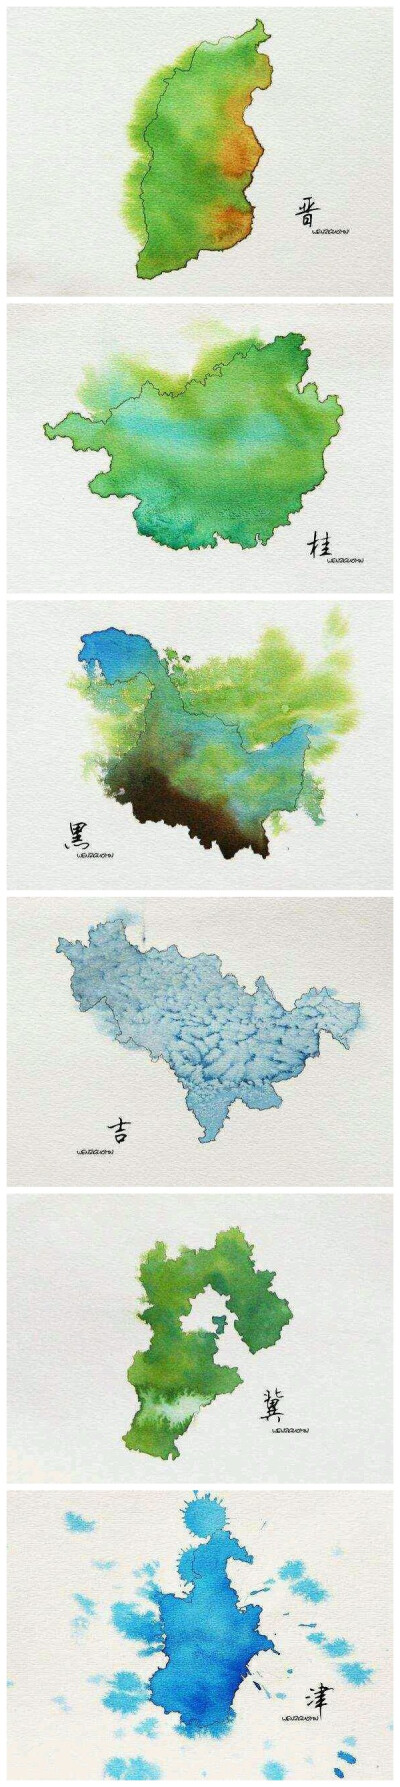 水墨中国 各省区地图 手绘 水彩 作者不详